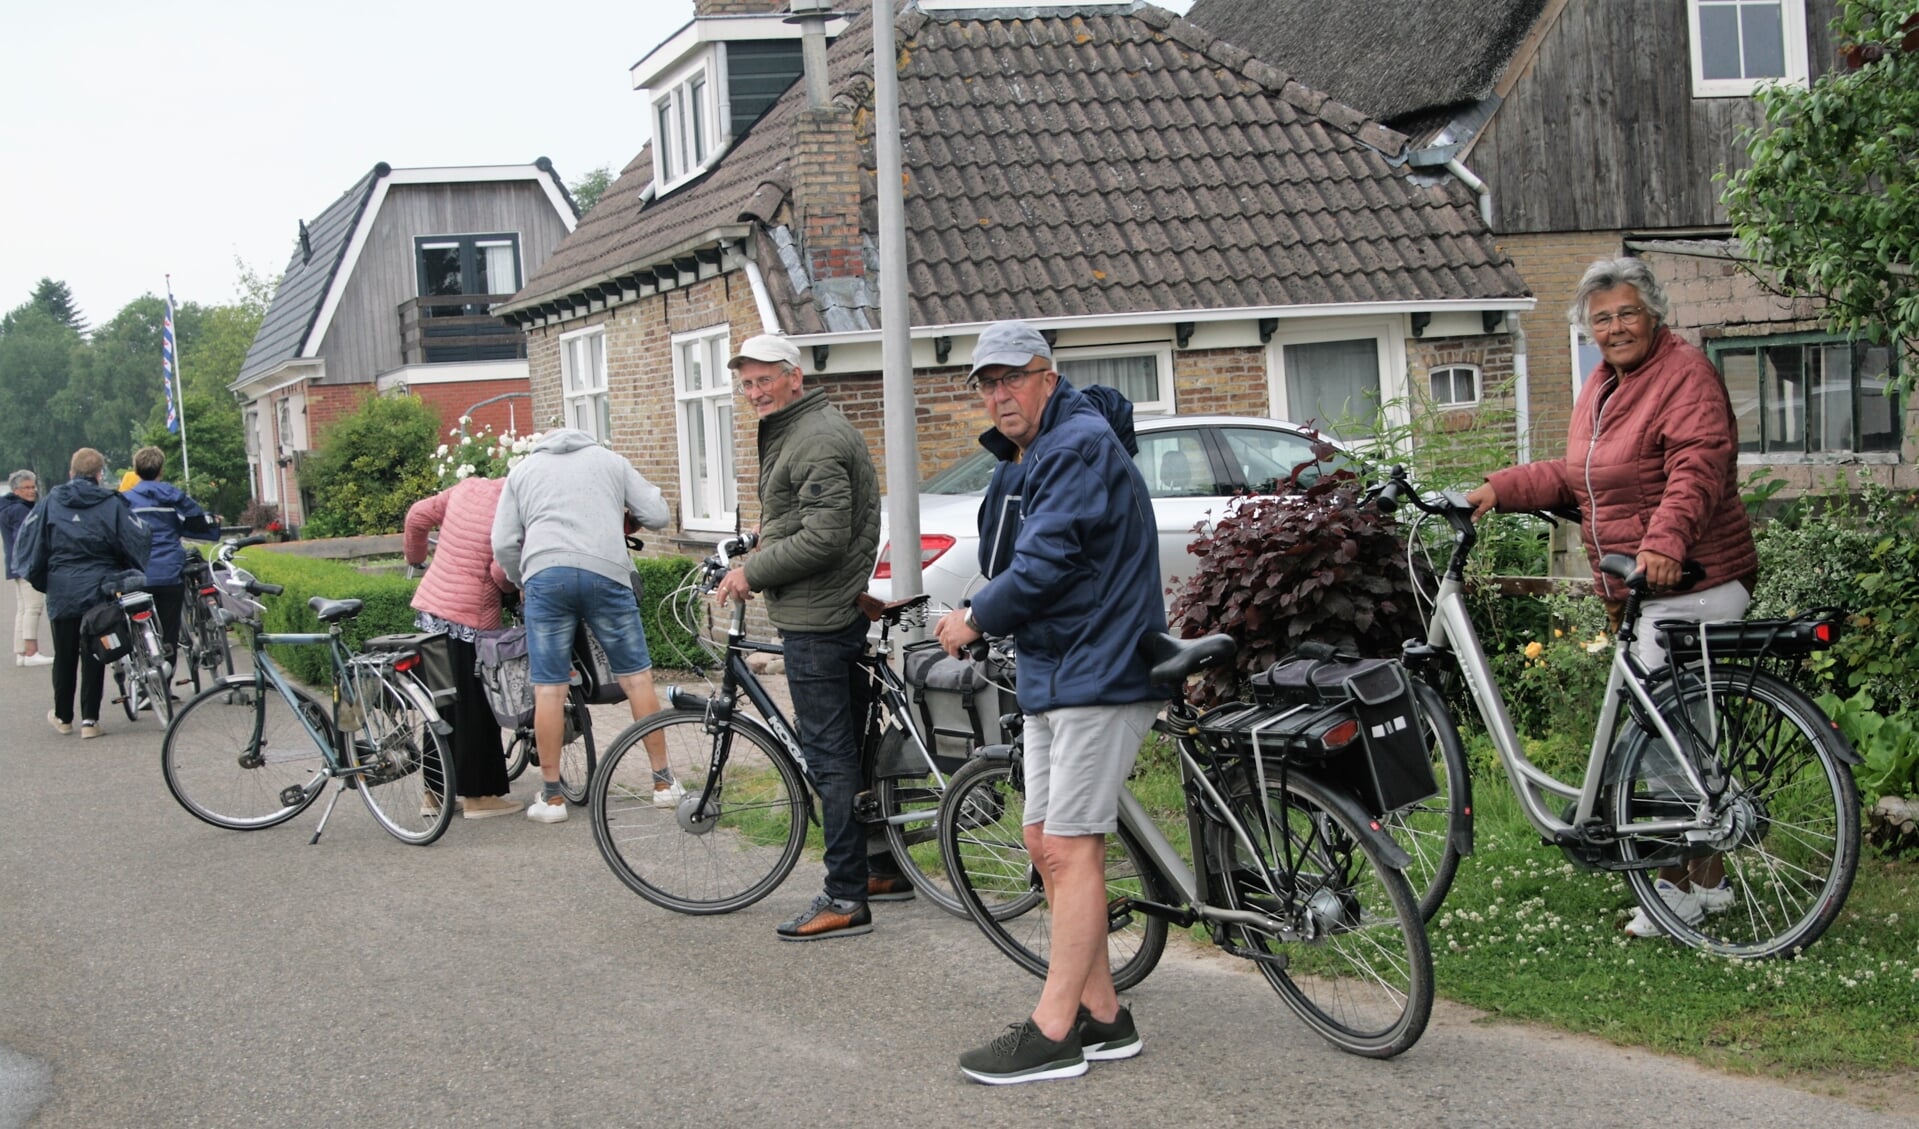 De fietstochten vanuit Burum zijn bedoeld om te genieten en niet gericht op snelheid, meldt organisator Jetze Haarsma uit Burum.